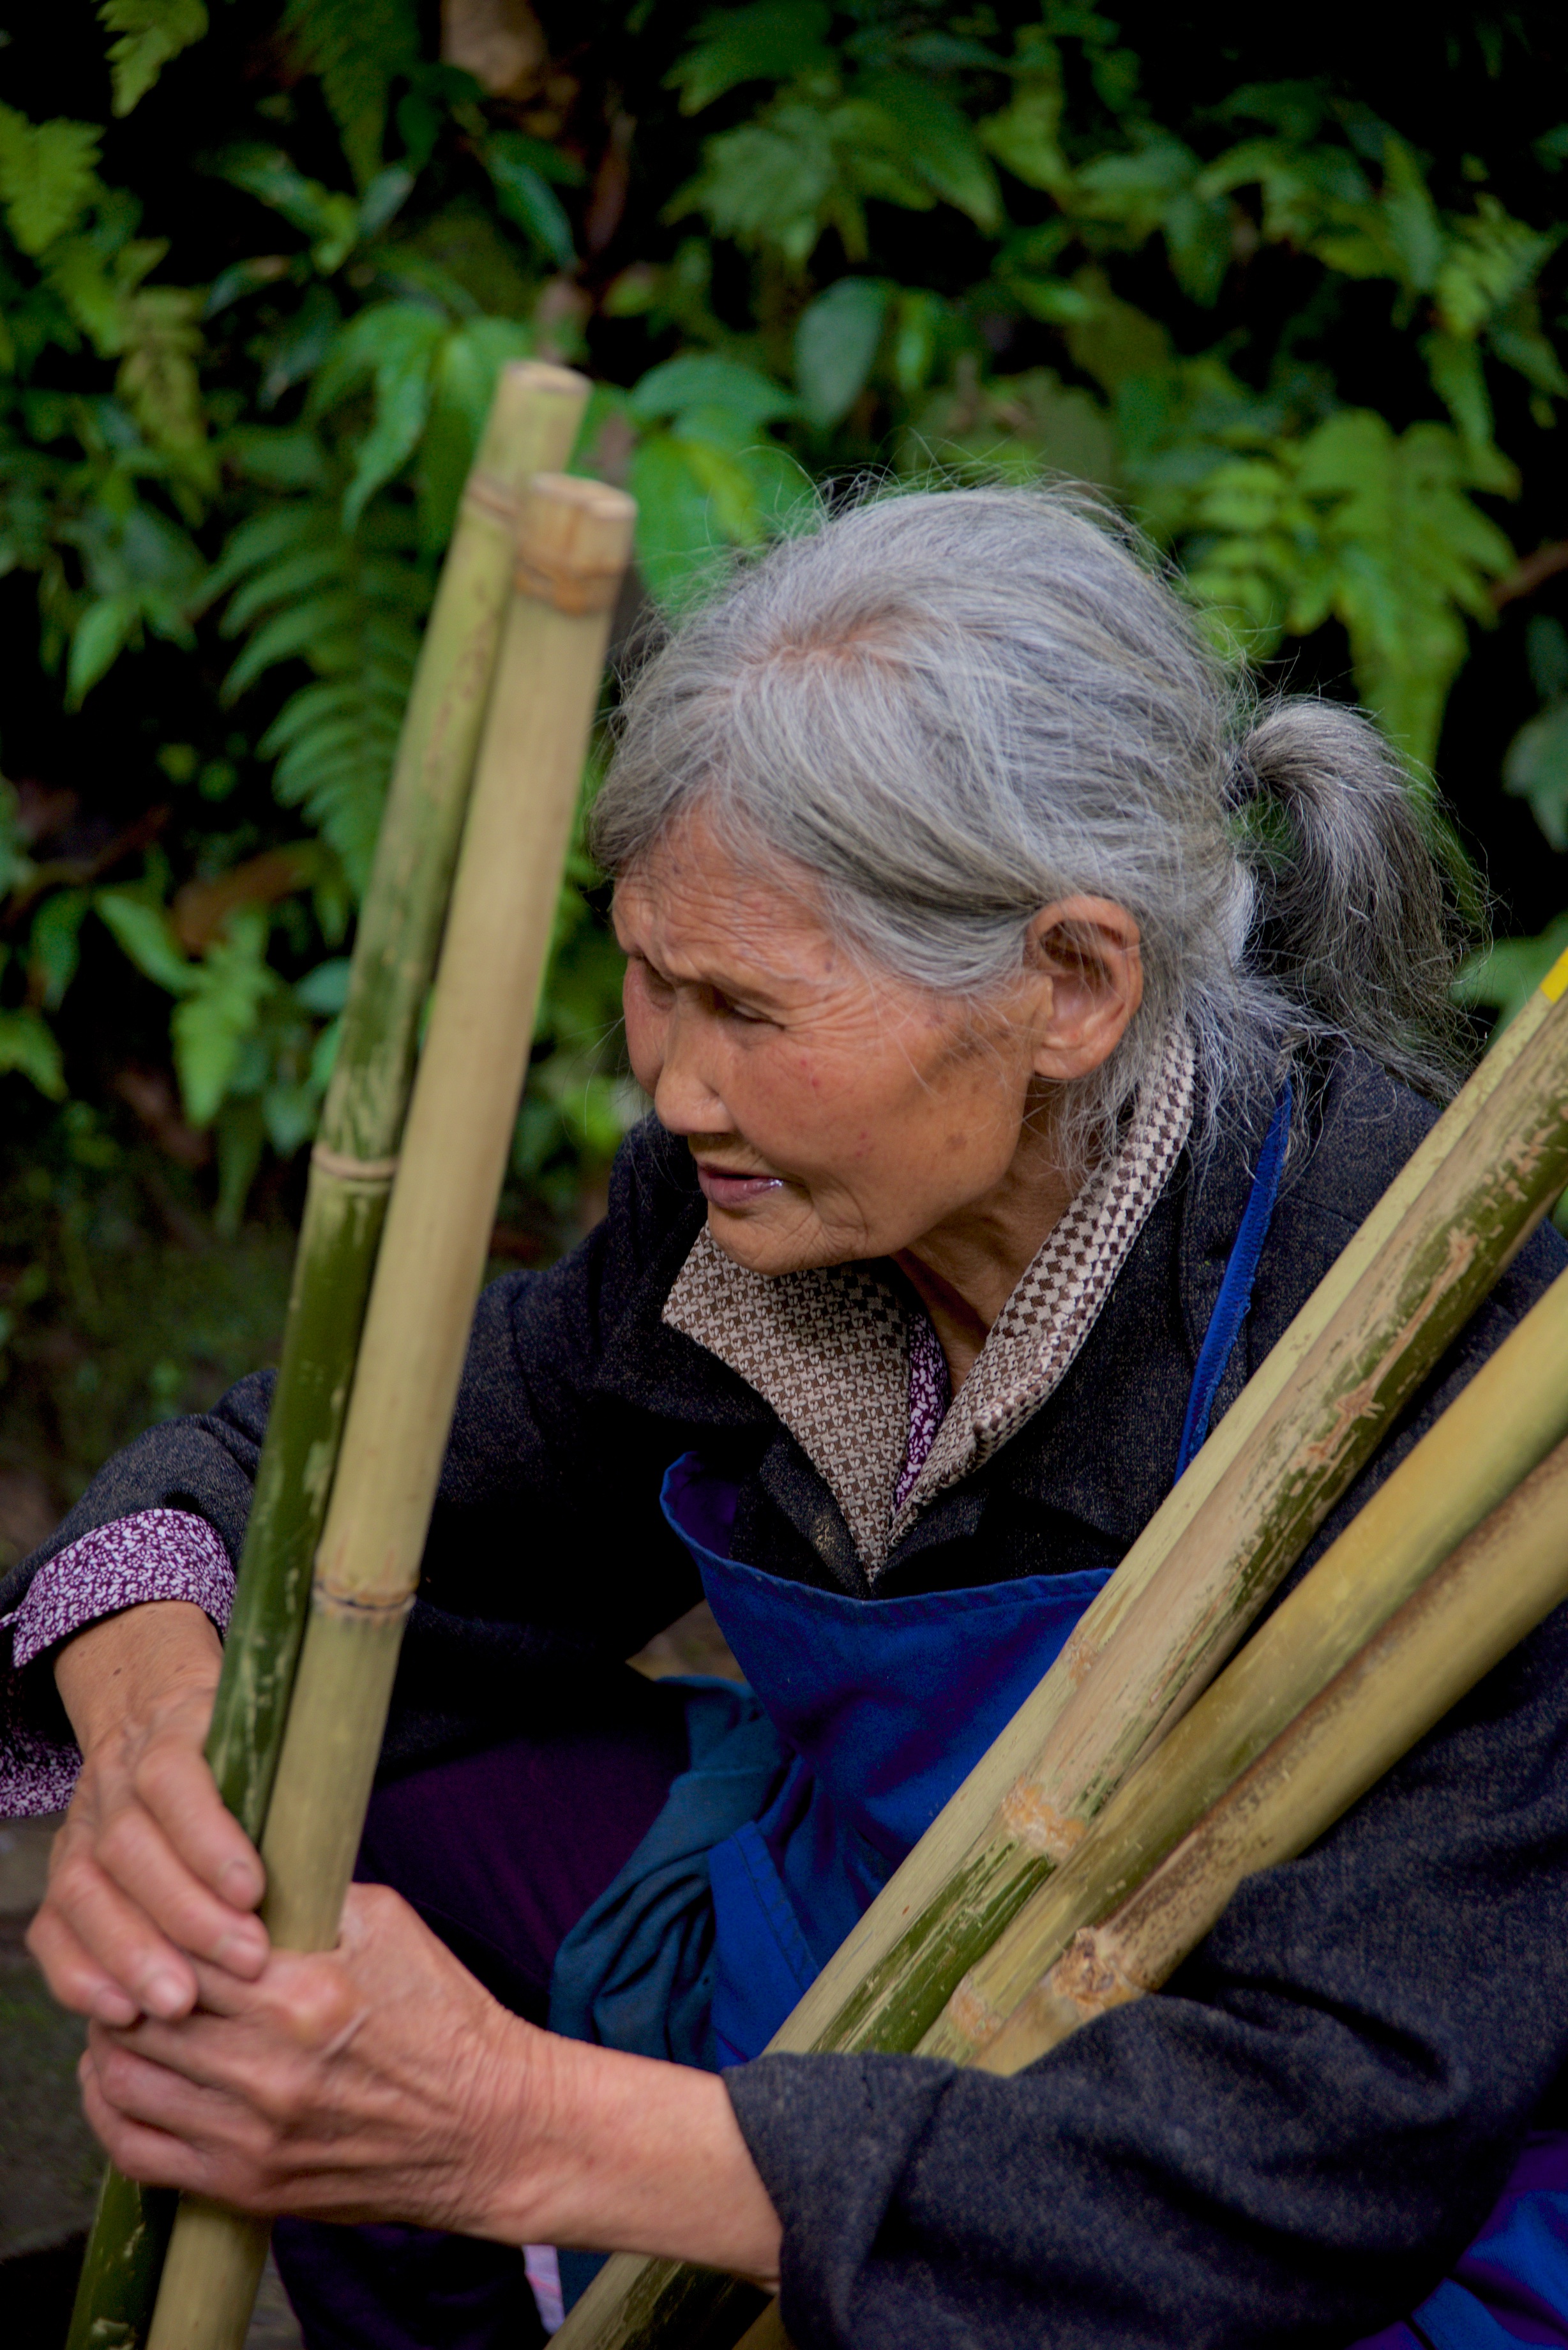  Old lady selling walking poles, Emei Shan 